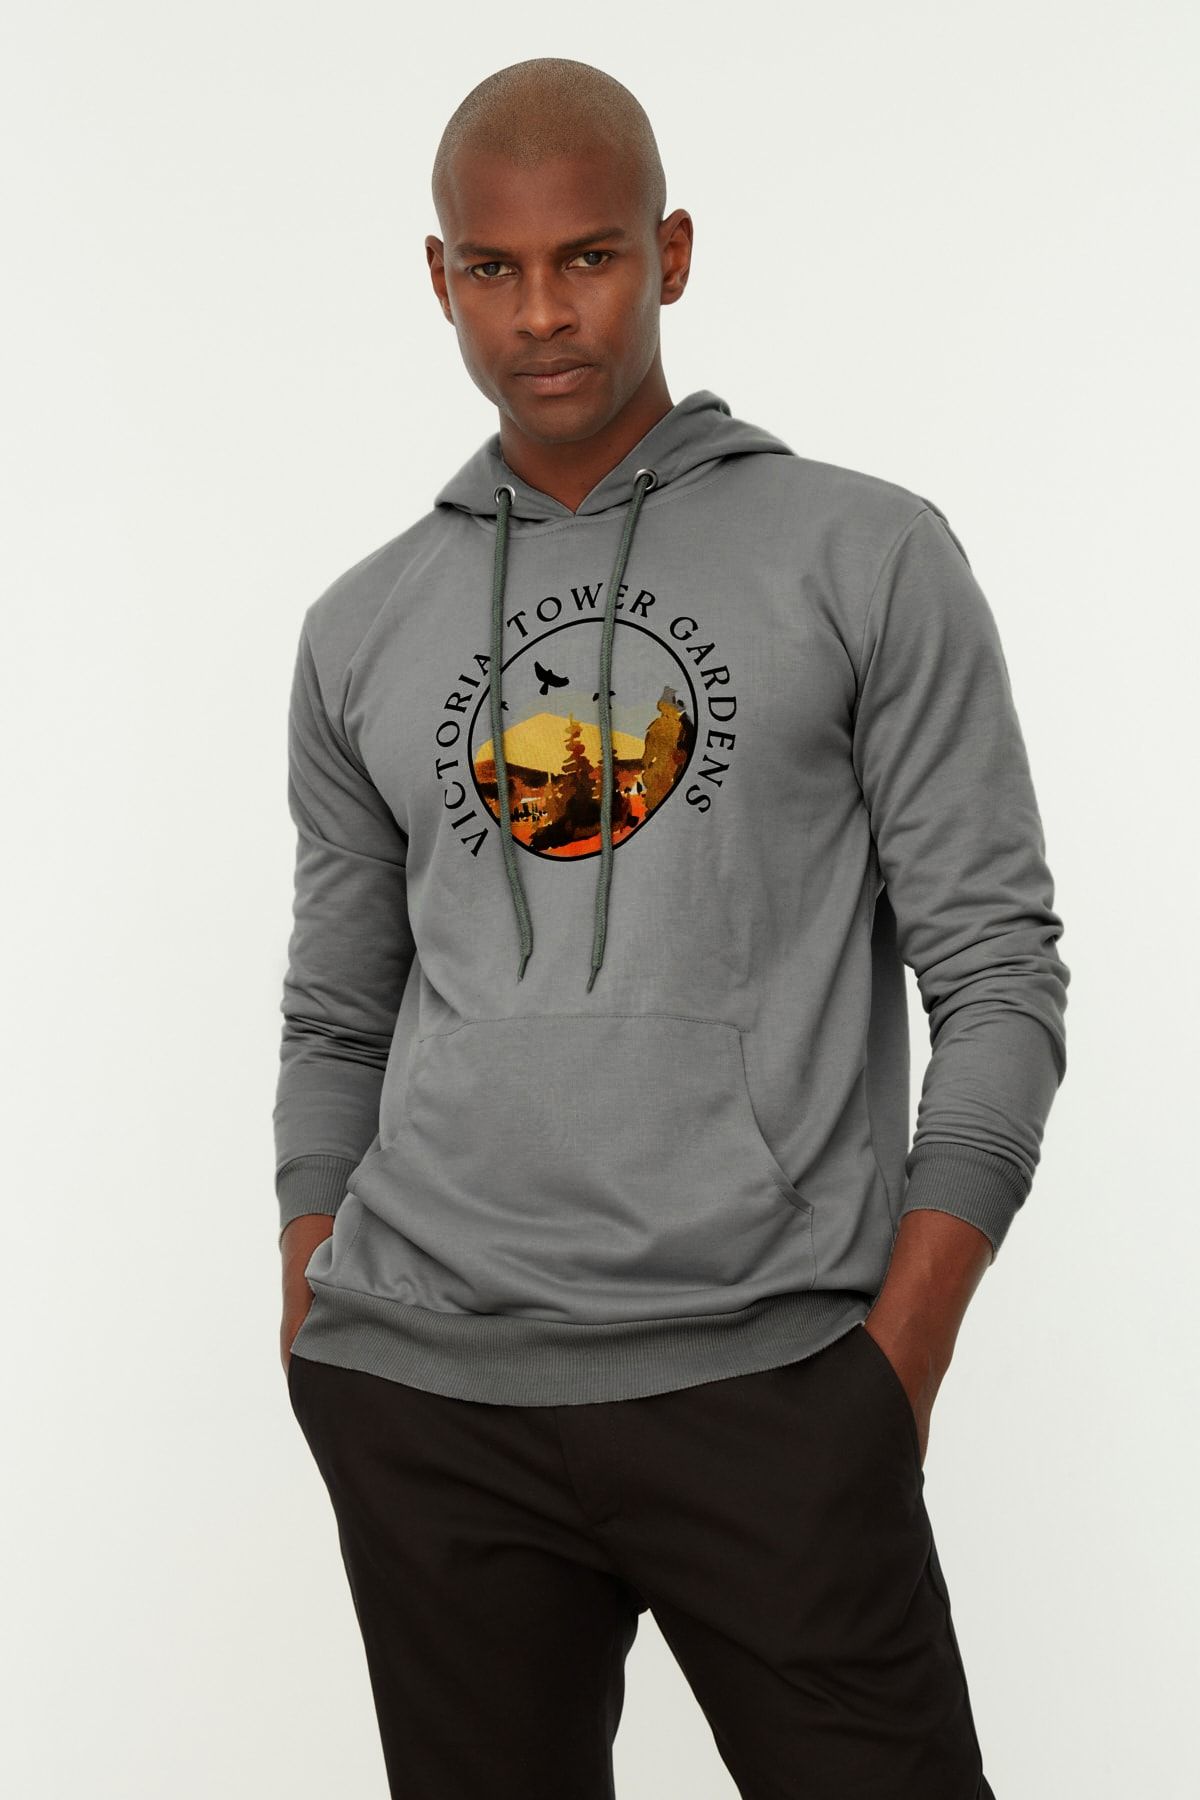 Jack & Jones Men's Sweatshirts  Casual Comfort and Style - Trendyol